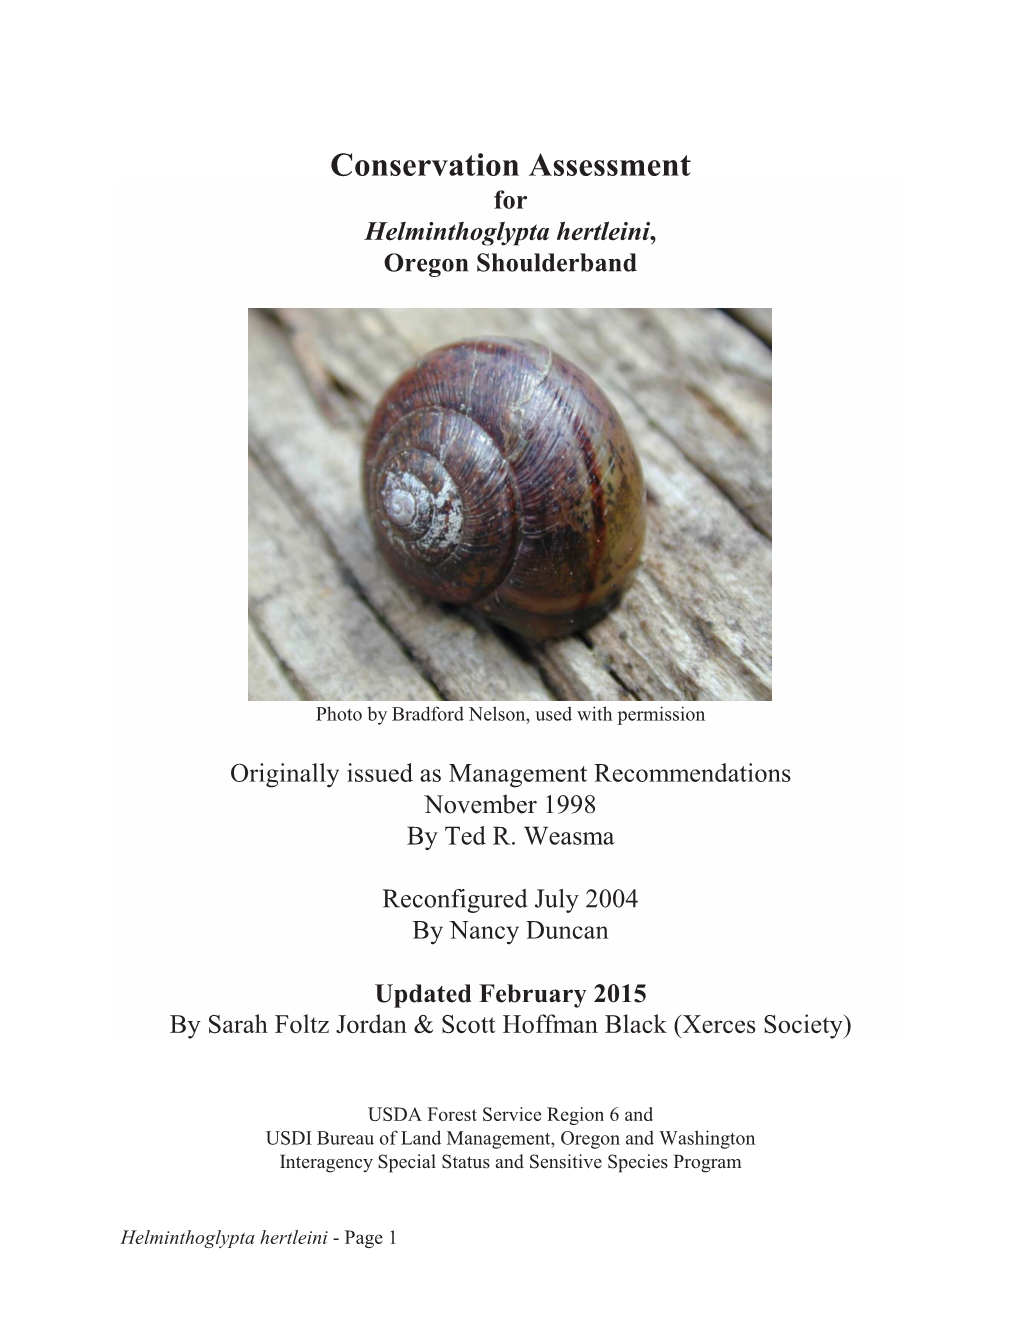 Conservation Assessment for Helminthoglypta Hertleini, Oregon Shoulderband